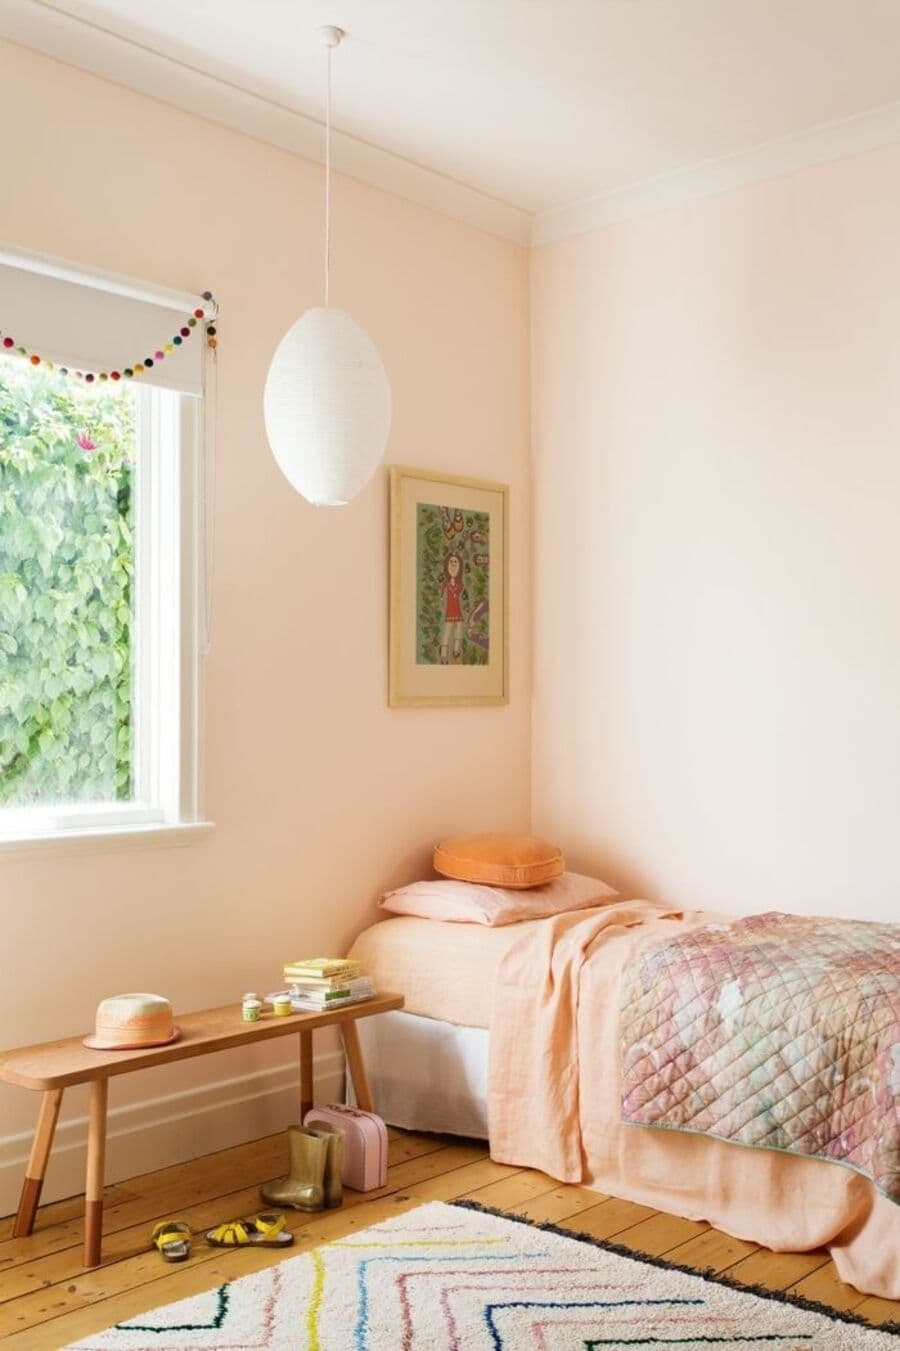 Dormitorio infantil con muros pintados de color Peach fuzz. Cama de una plaza junto a la pared, con sábanas color damasco y un cobertor. Lámpara colgante de papel, banqueta de madera bajo una ventana. Piso de madera y alfombra blanca con líneas de colores